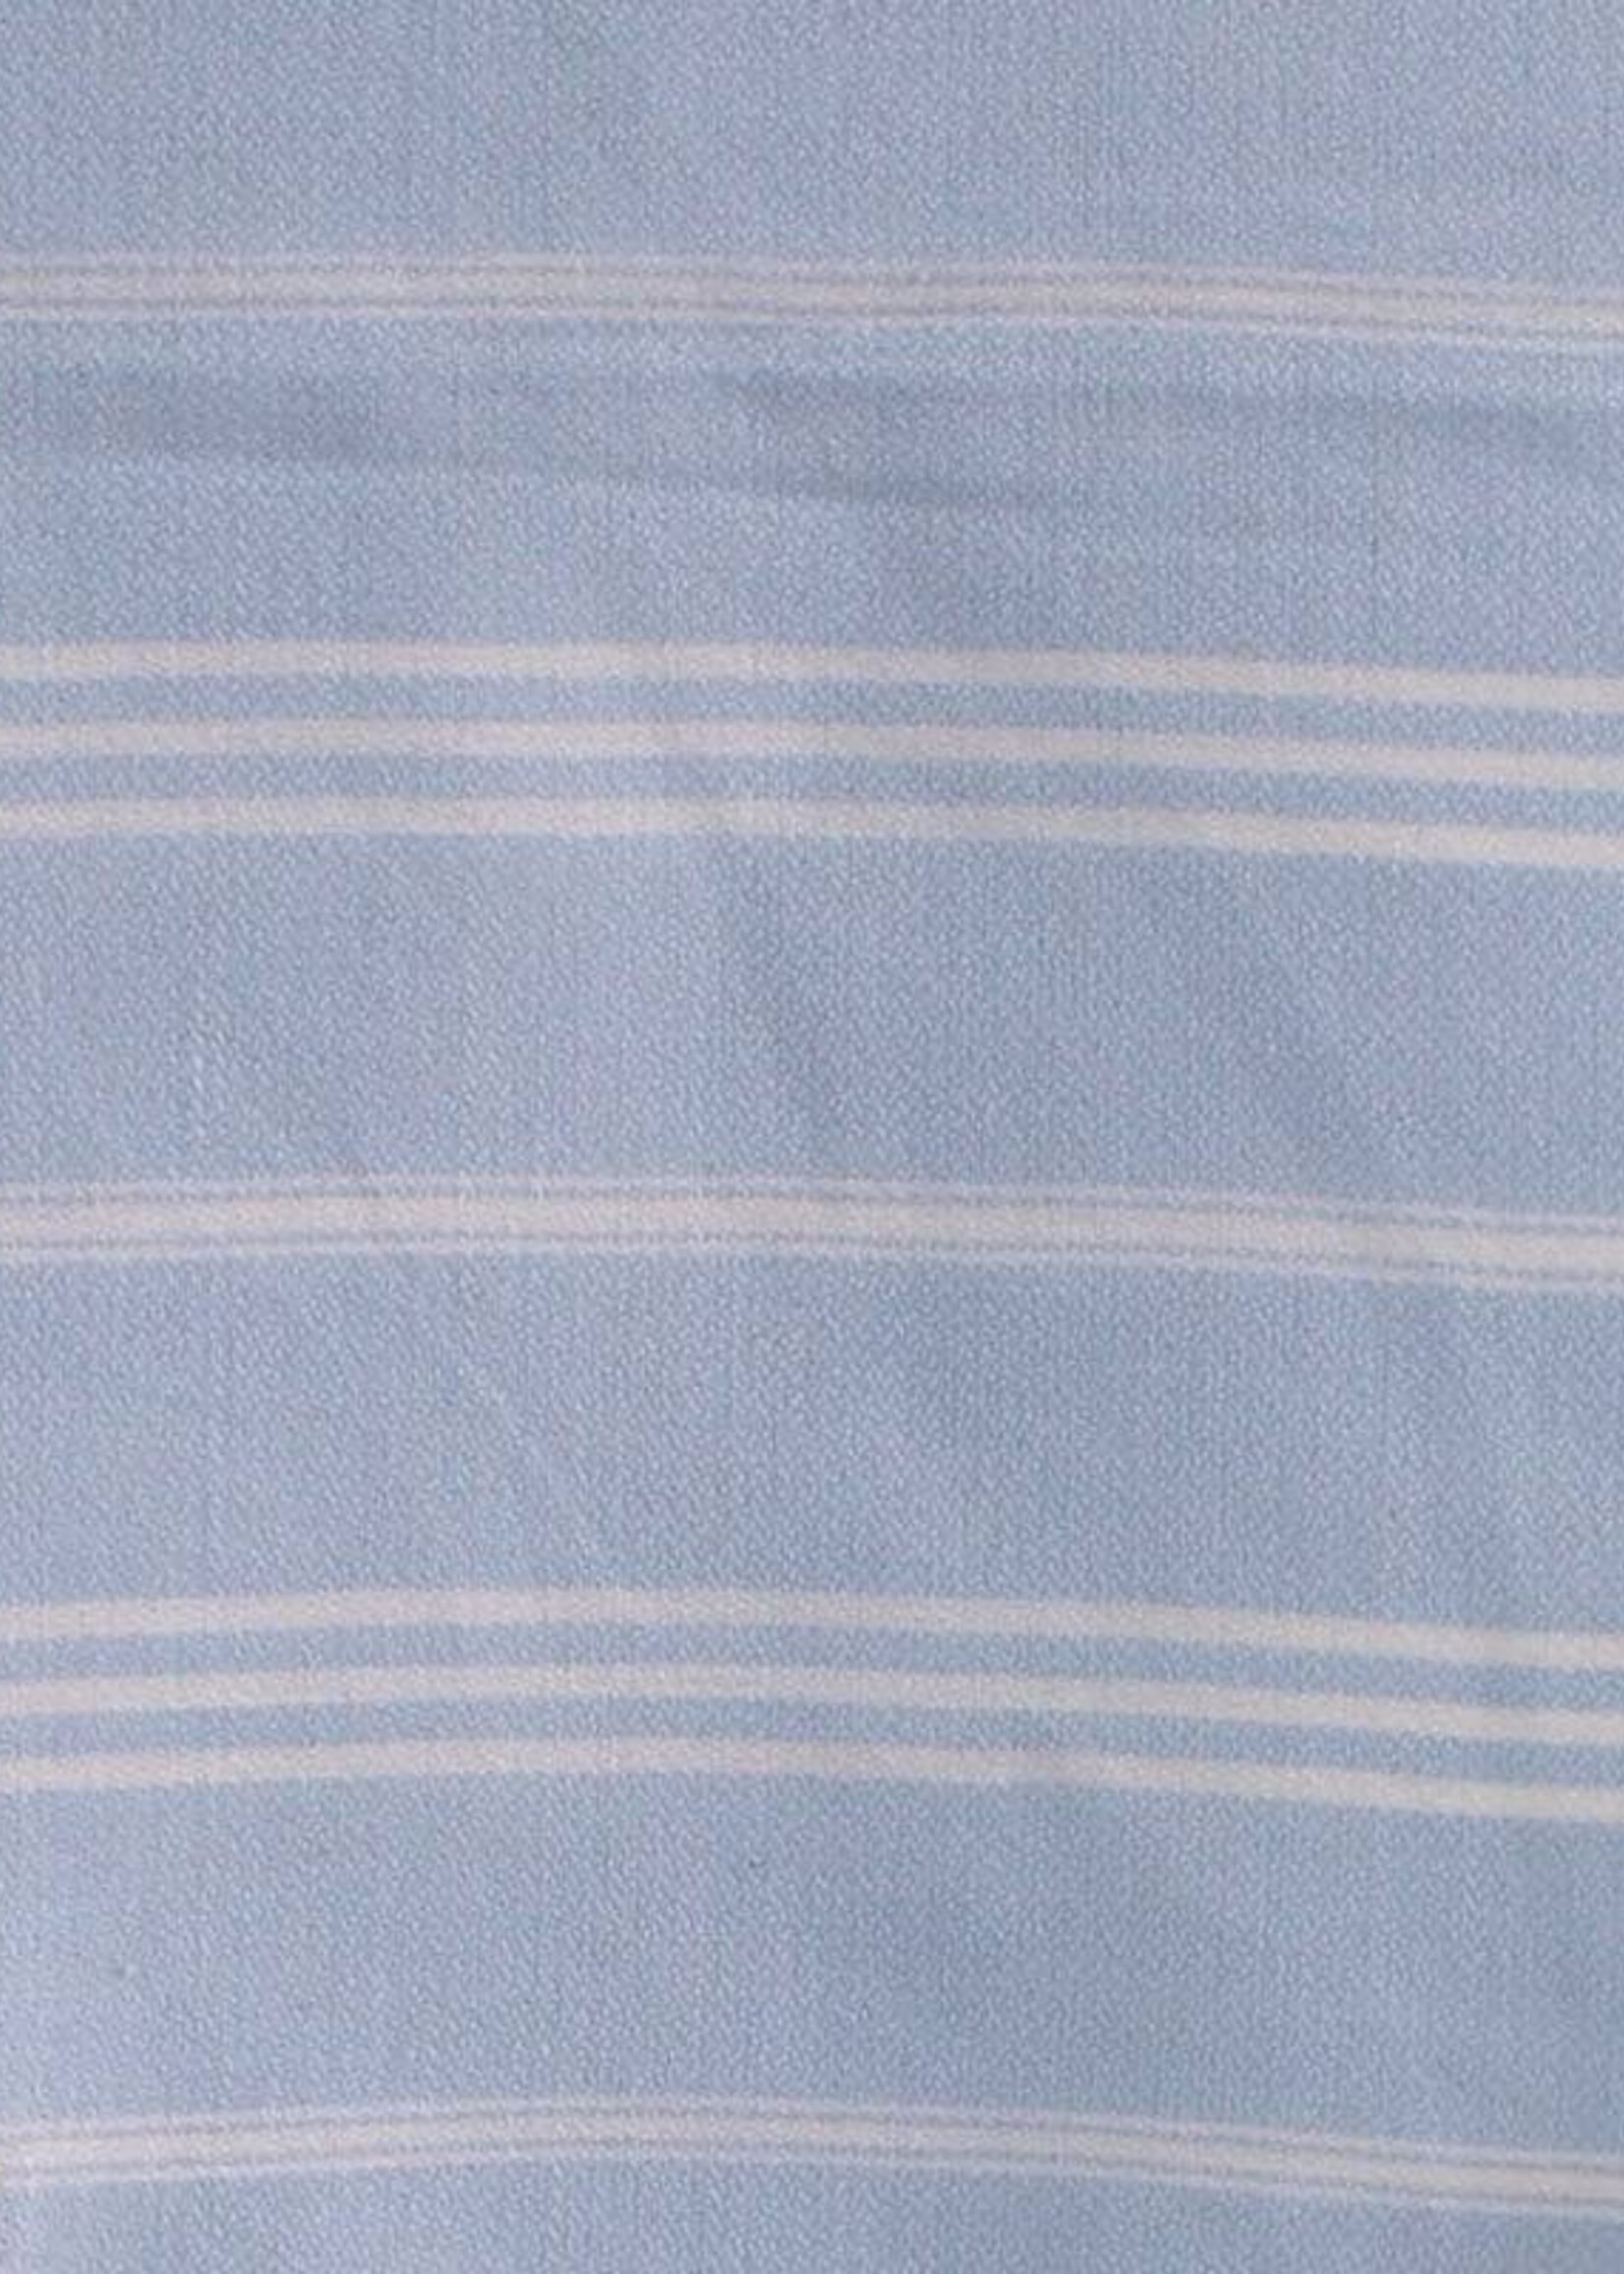 Ottomania hammam handdoek Ottomania 50x100cm lichtblauw - kleine hamamdoek